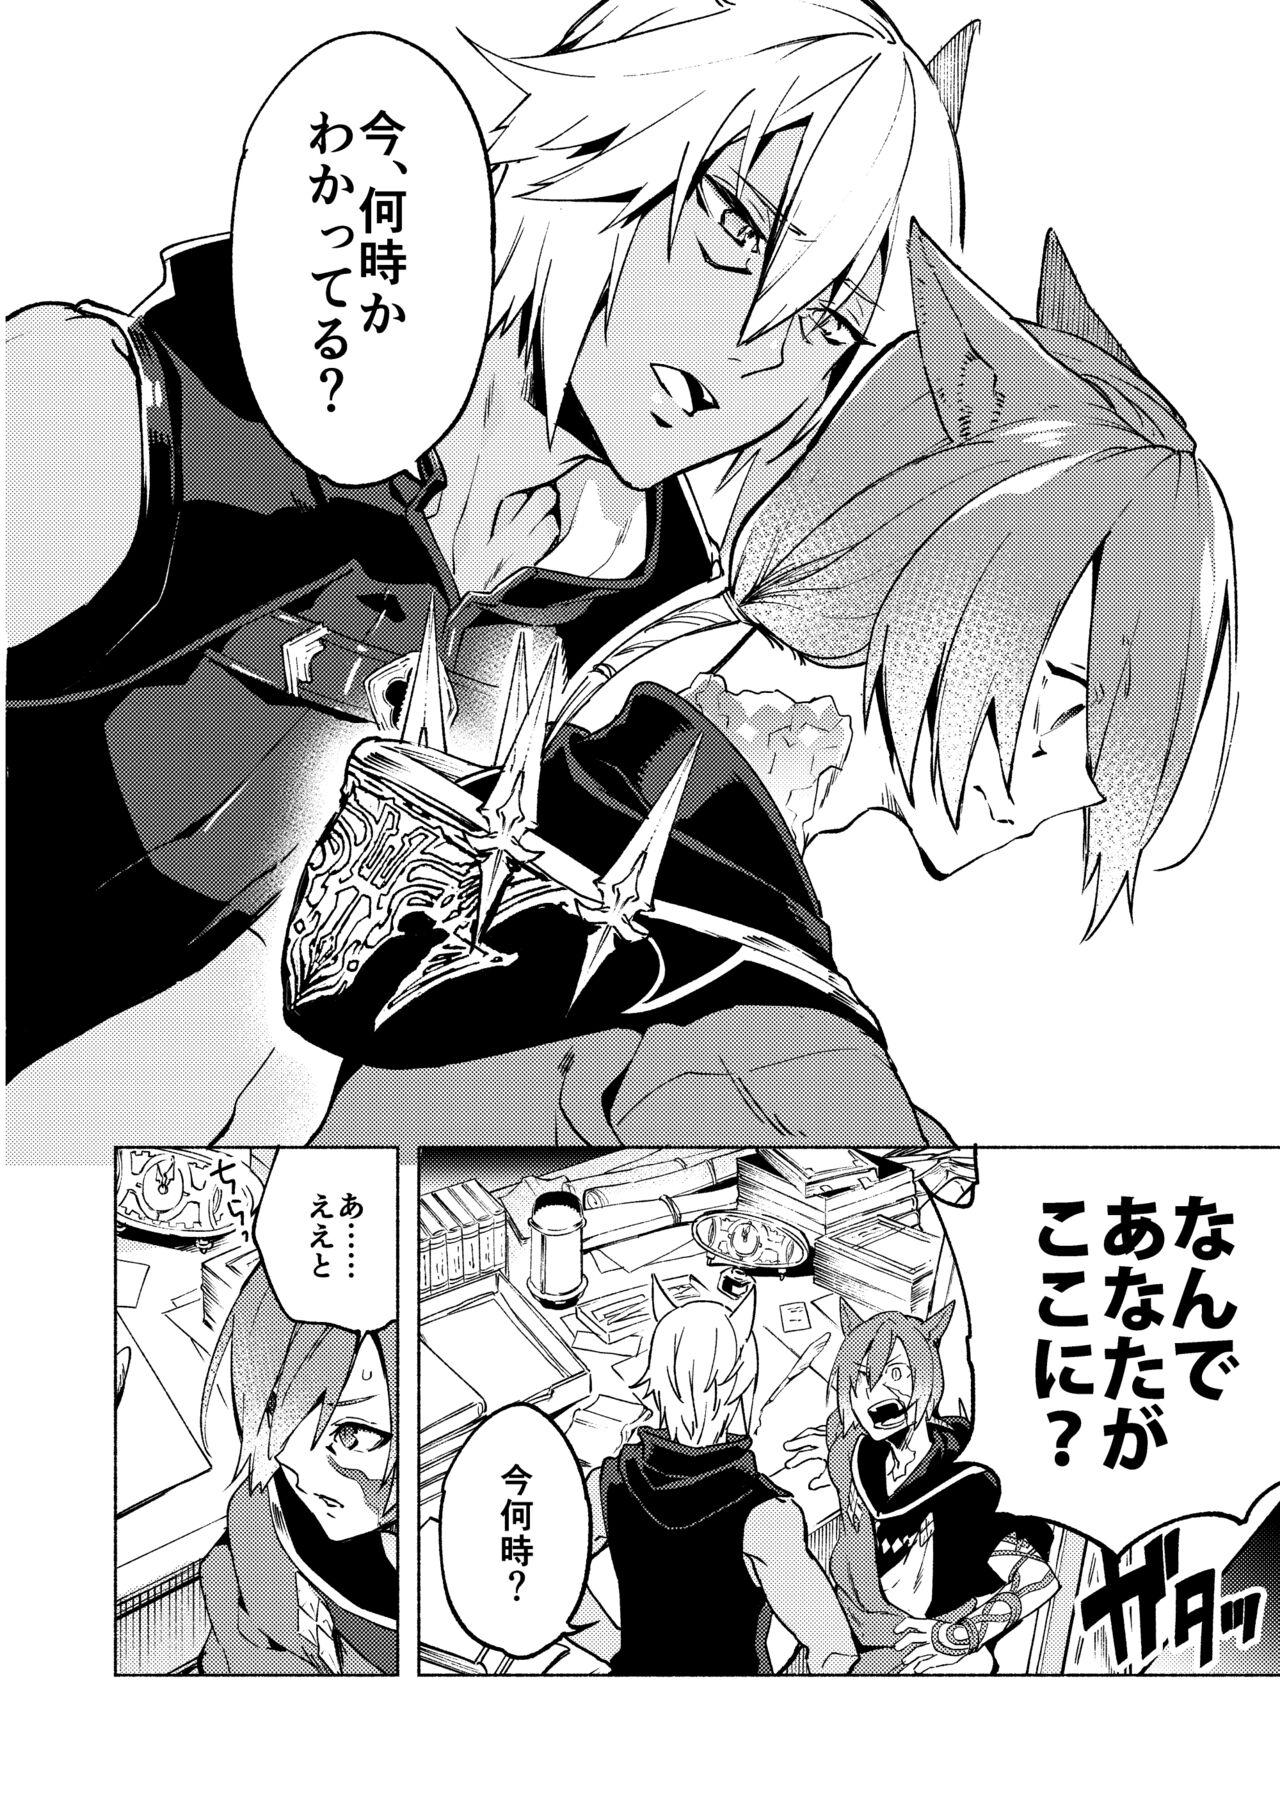 Slave Koi no Uta, Ai no Uta. - Final fantasy xiv Final fantasy Sensual - Page 8